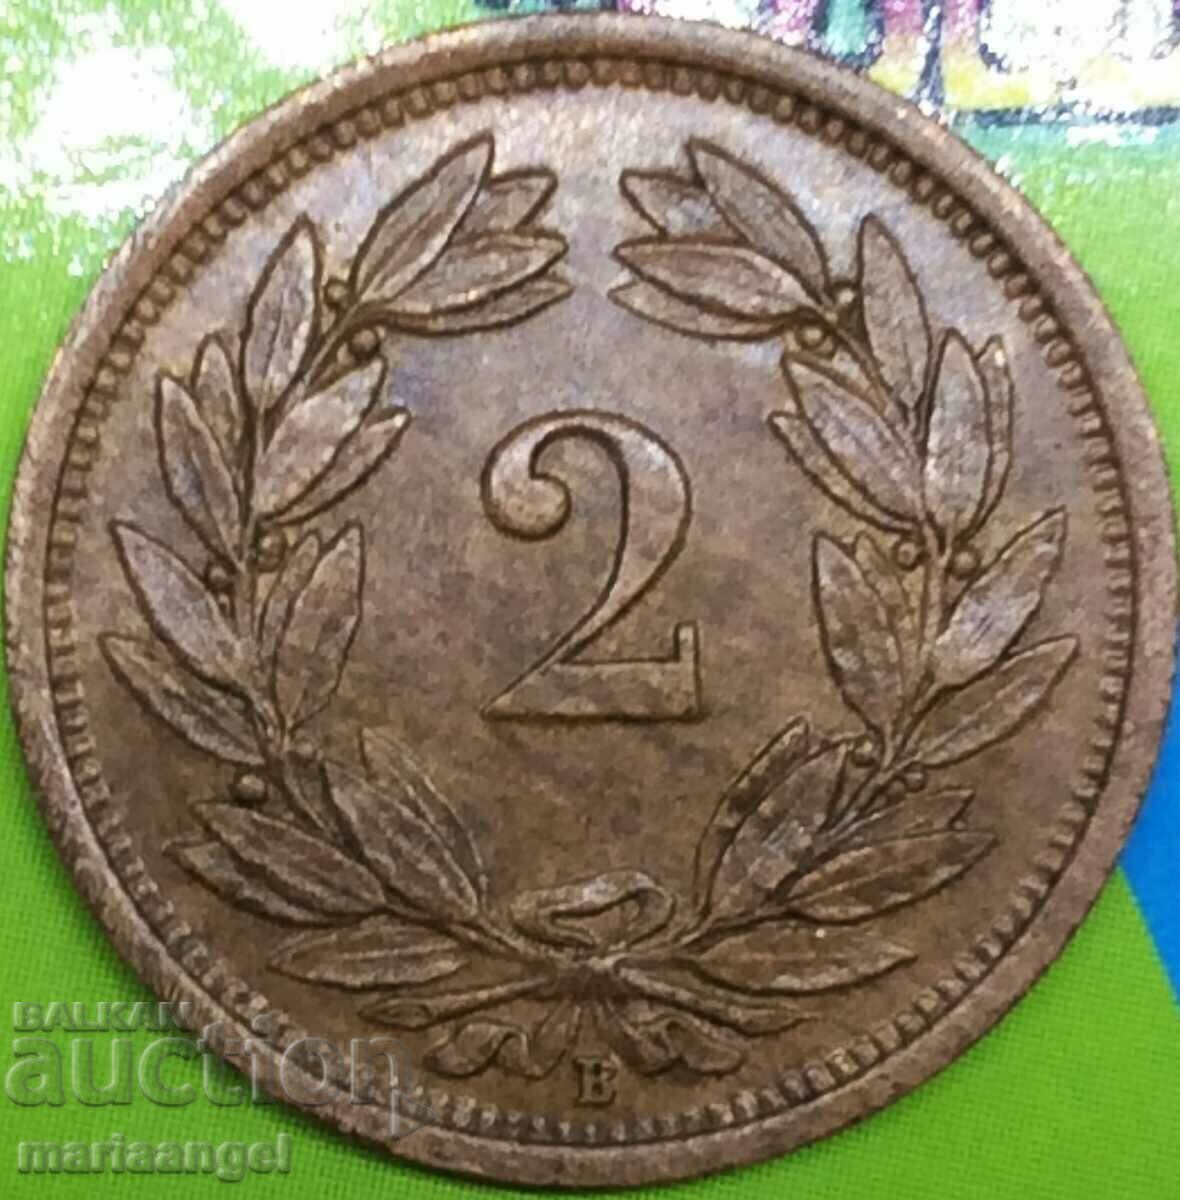 Switzerland 2 rapen 1919 bronze